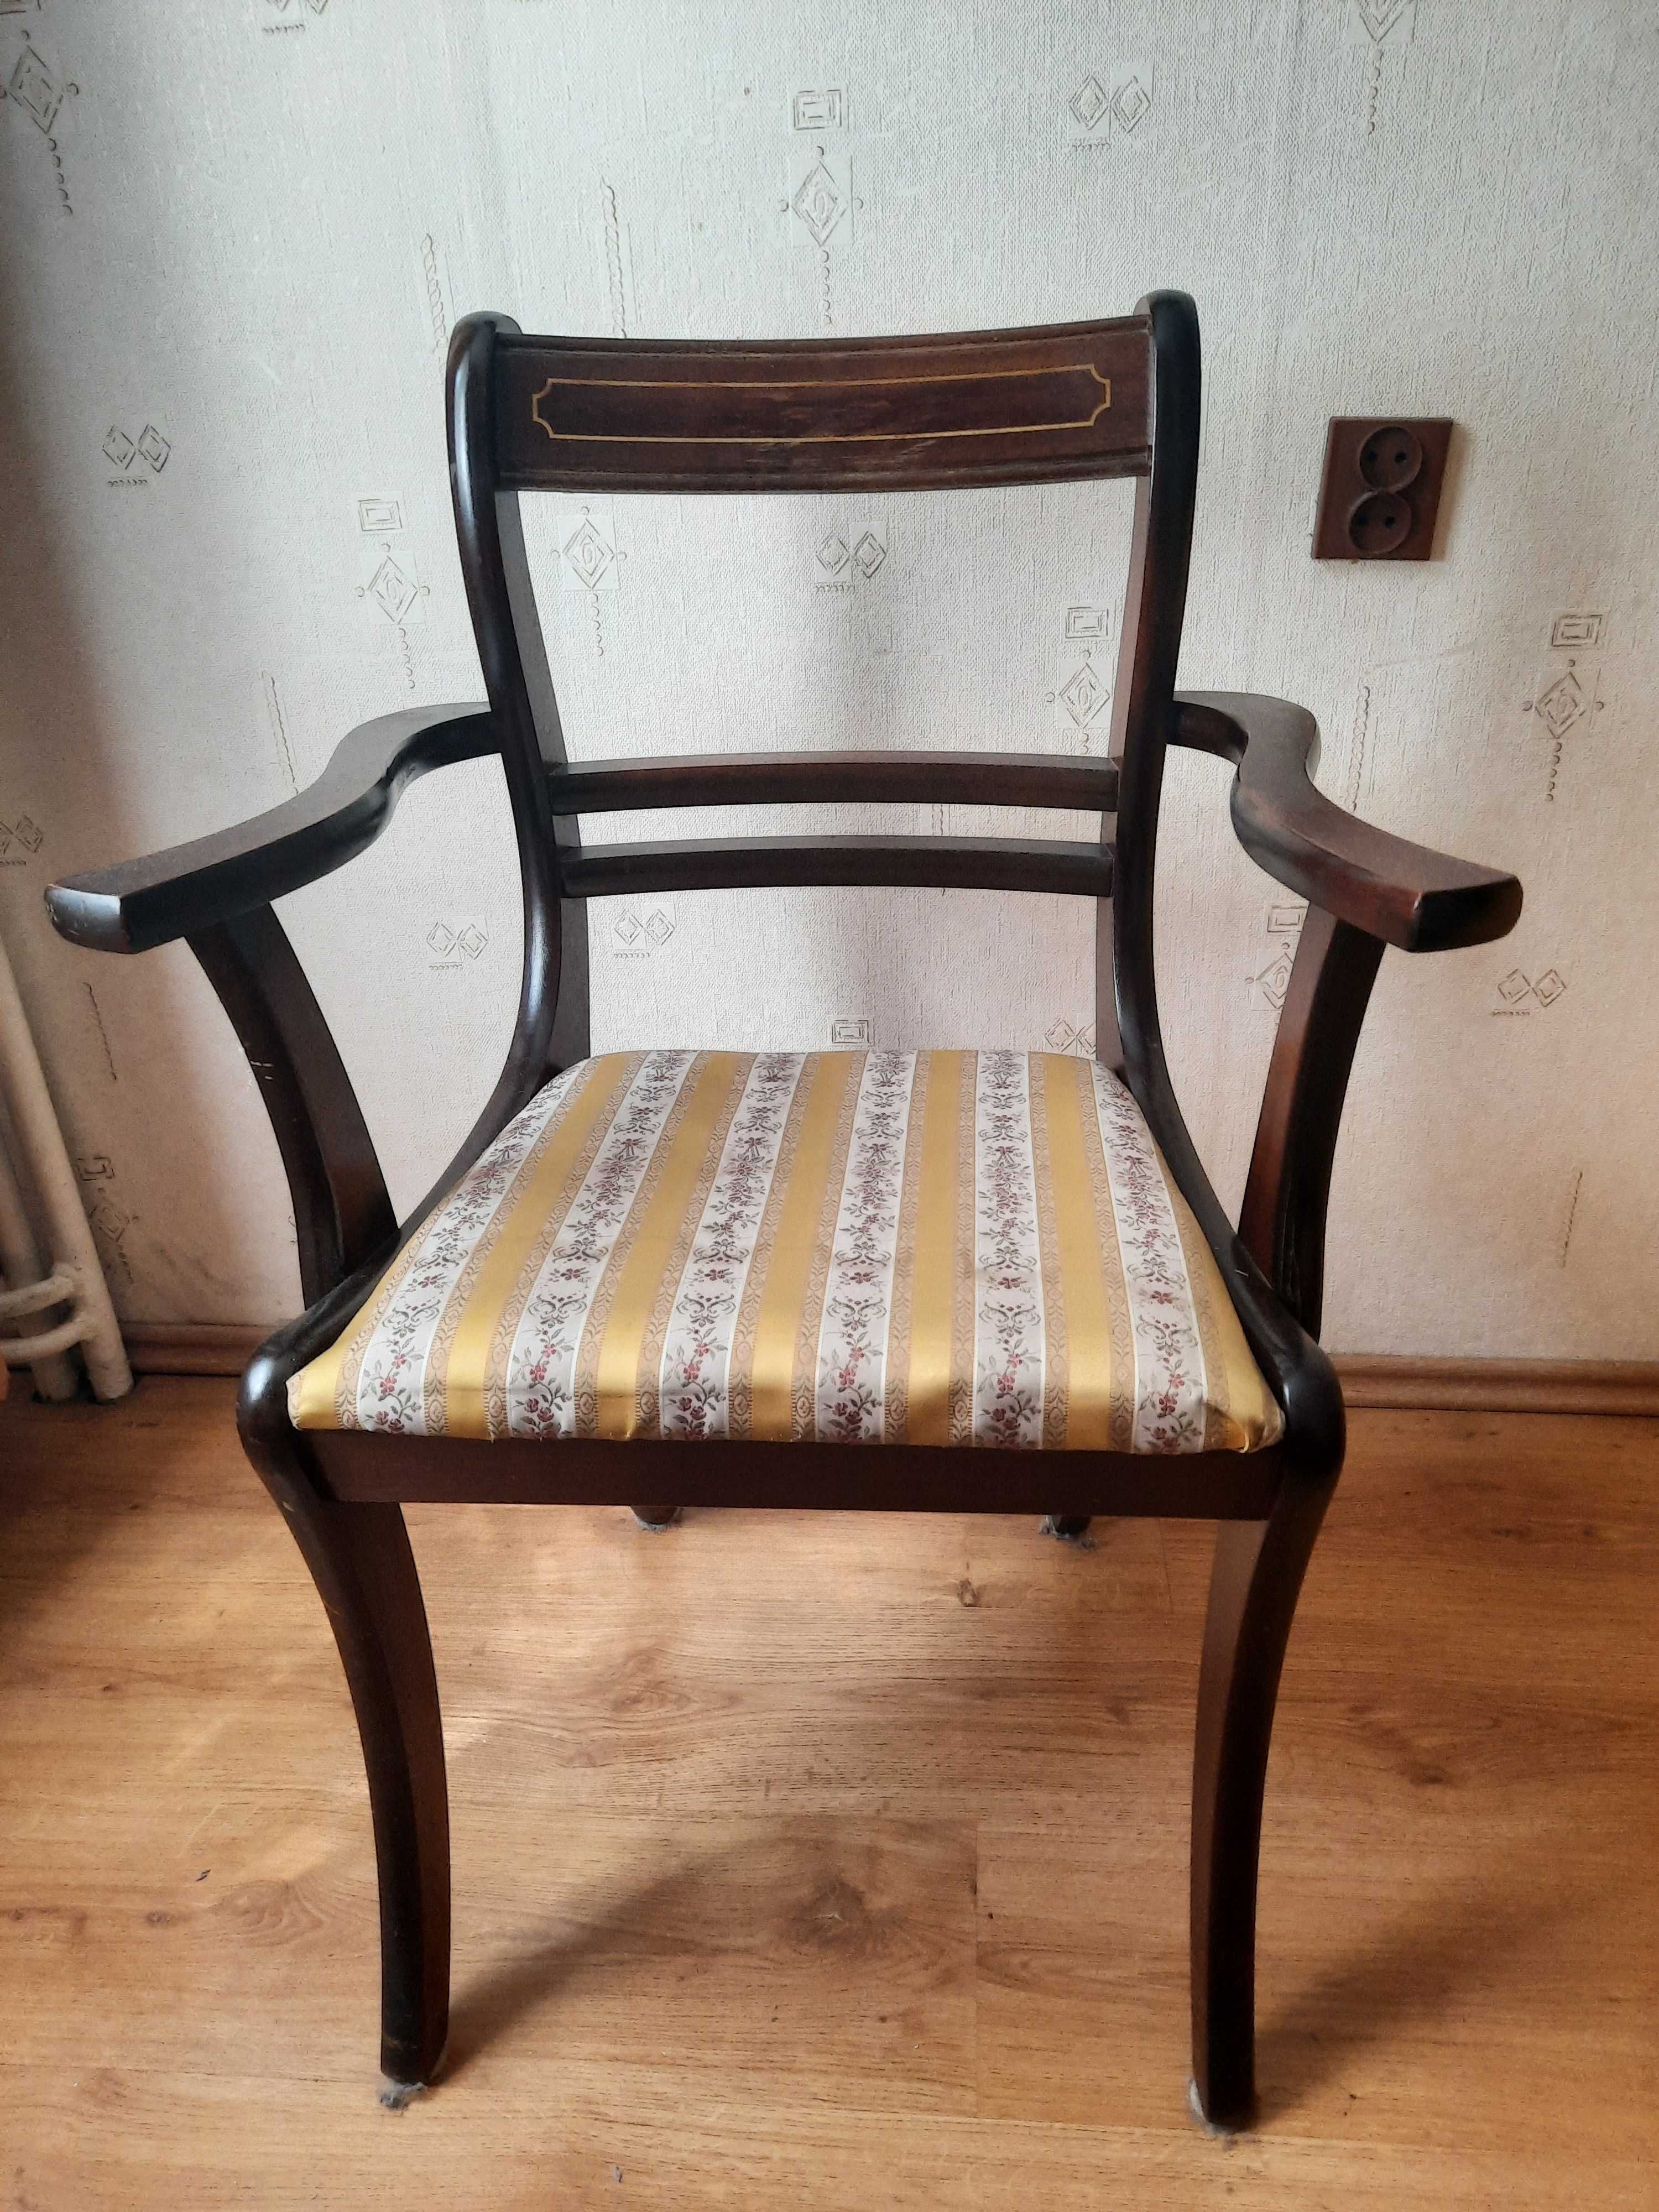 Stylowe krzesła - Art deco / Retro / Vintage - 2 szt.do renowacji